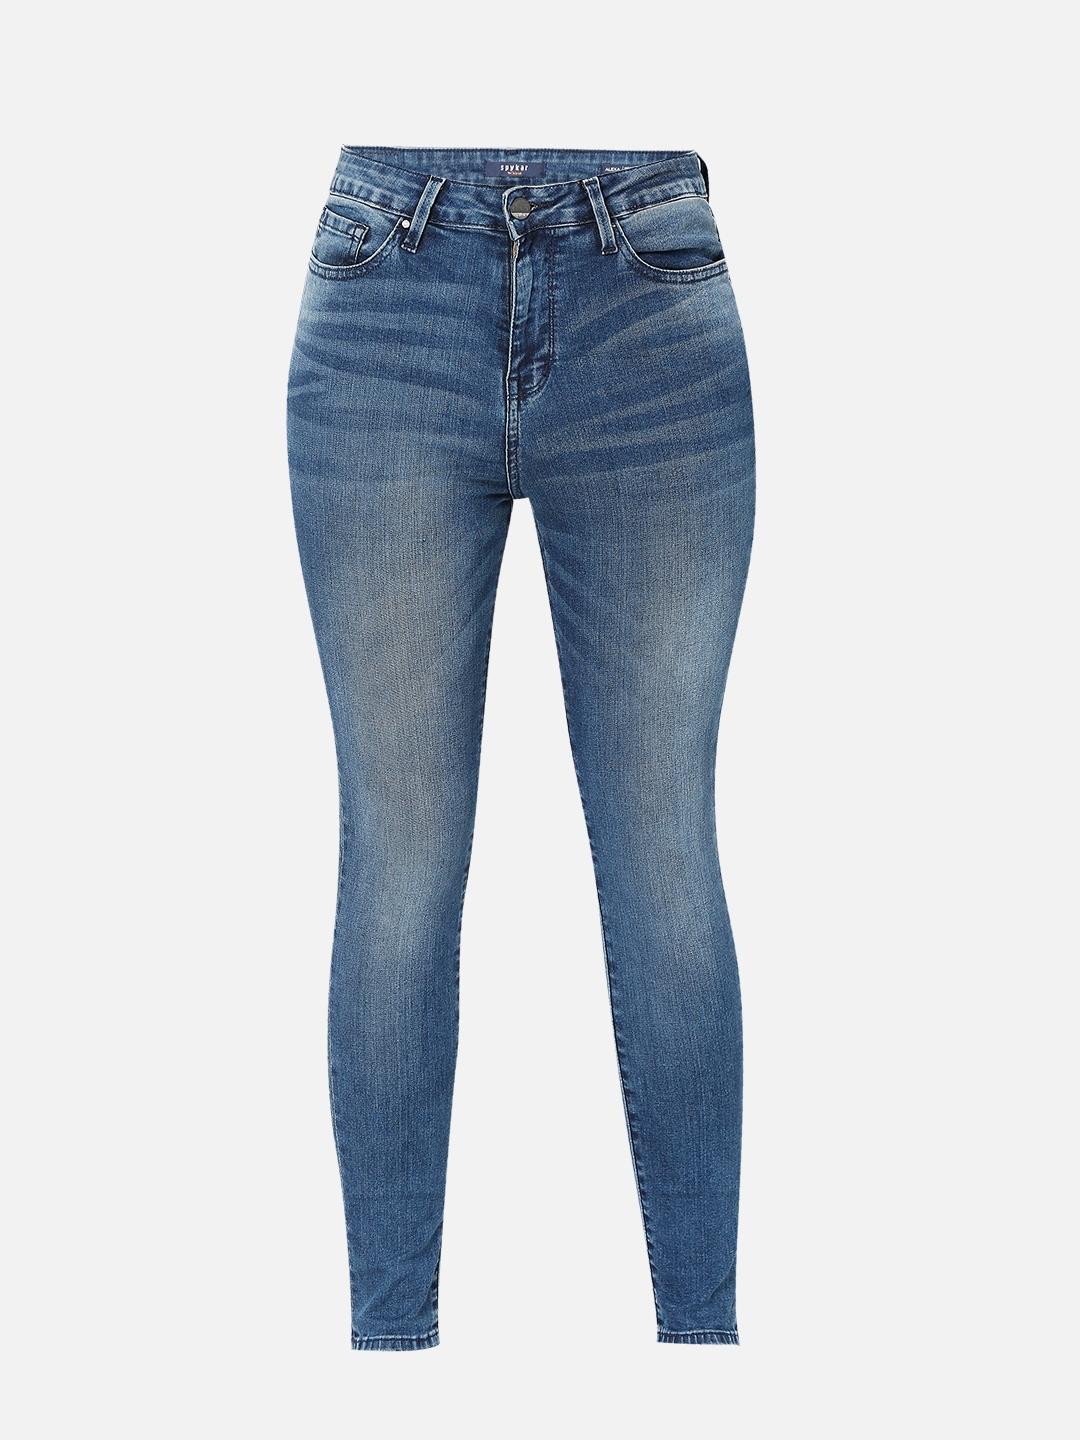 spykar | Women's Blue Cotton Solid Skinny Jeans 7